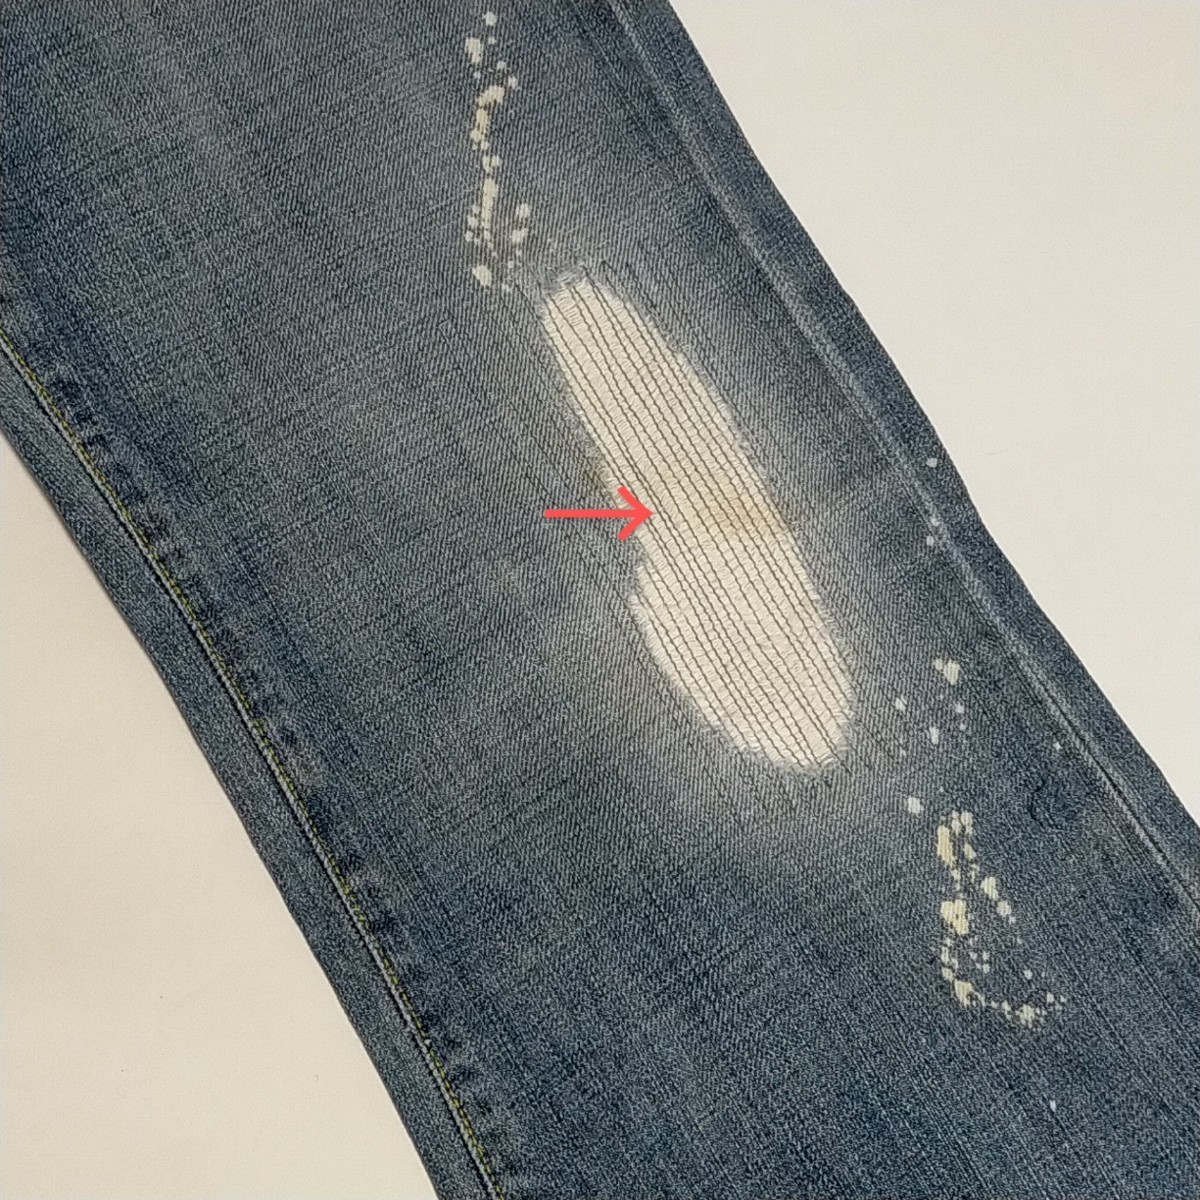 * paperdenim&cloth W30 Work Denim брюки USA производства ботинки cut повреждение джинсы мужской ji- хлеб Paper Denim & Cross *432